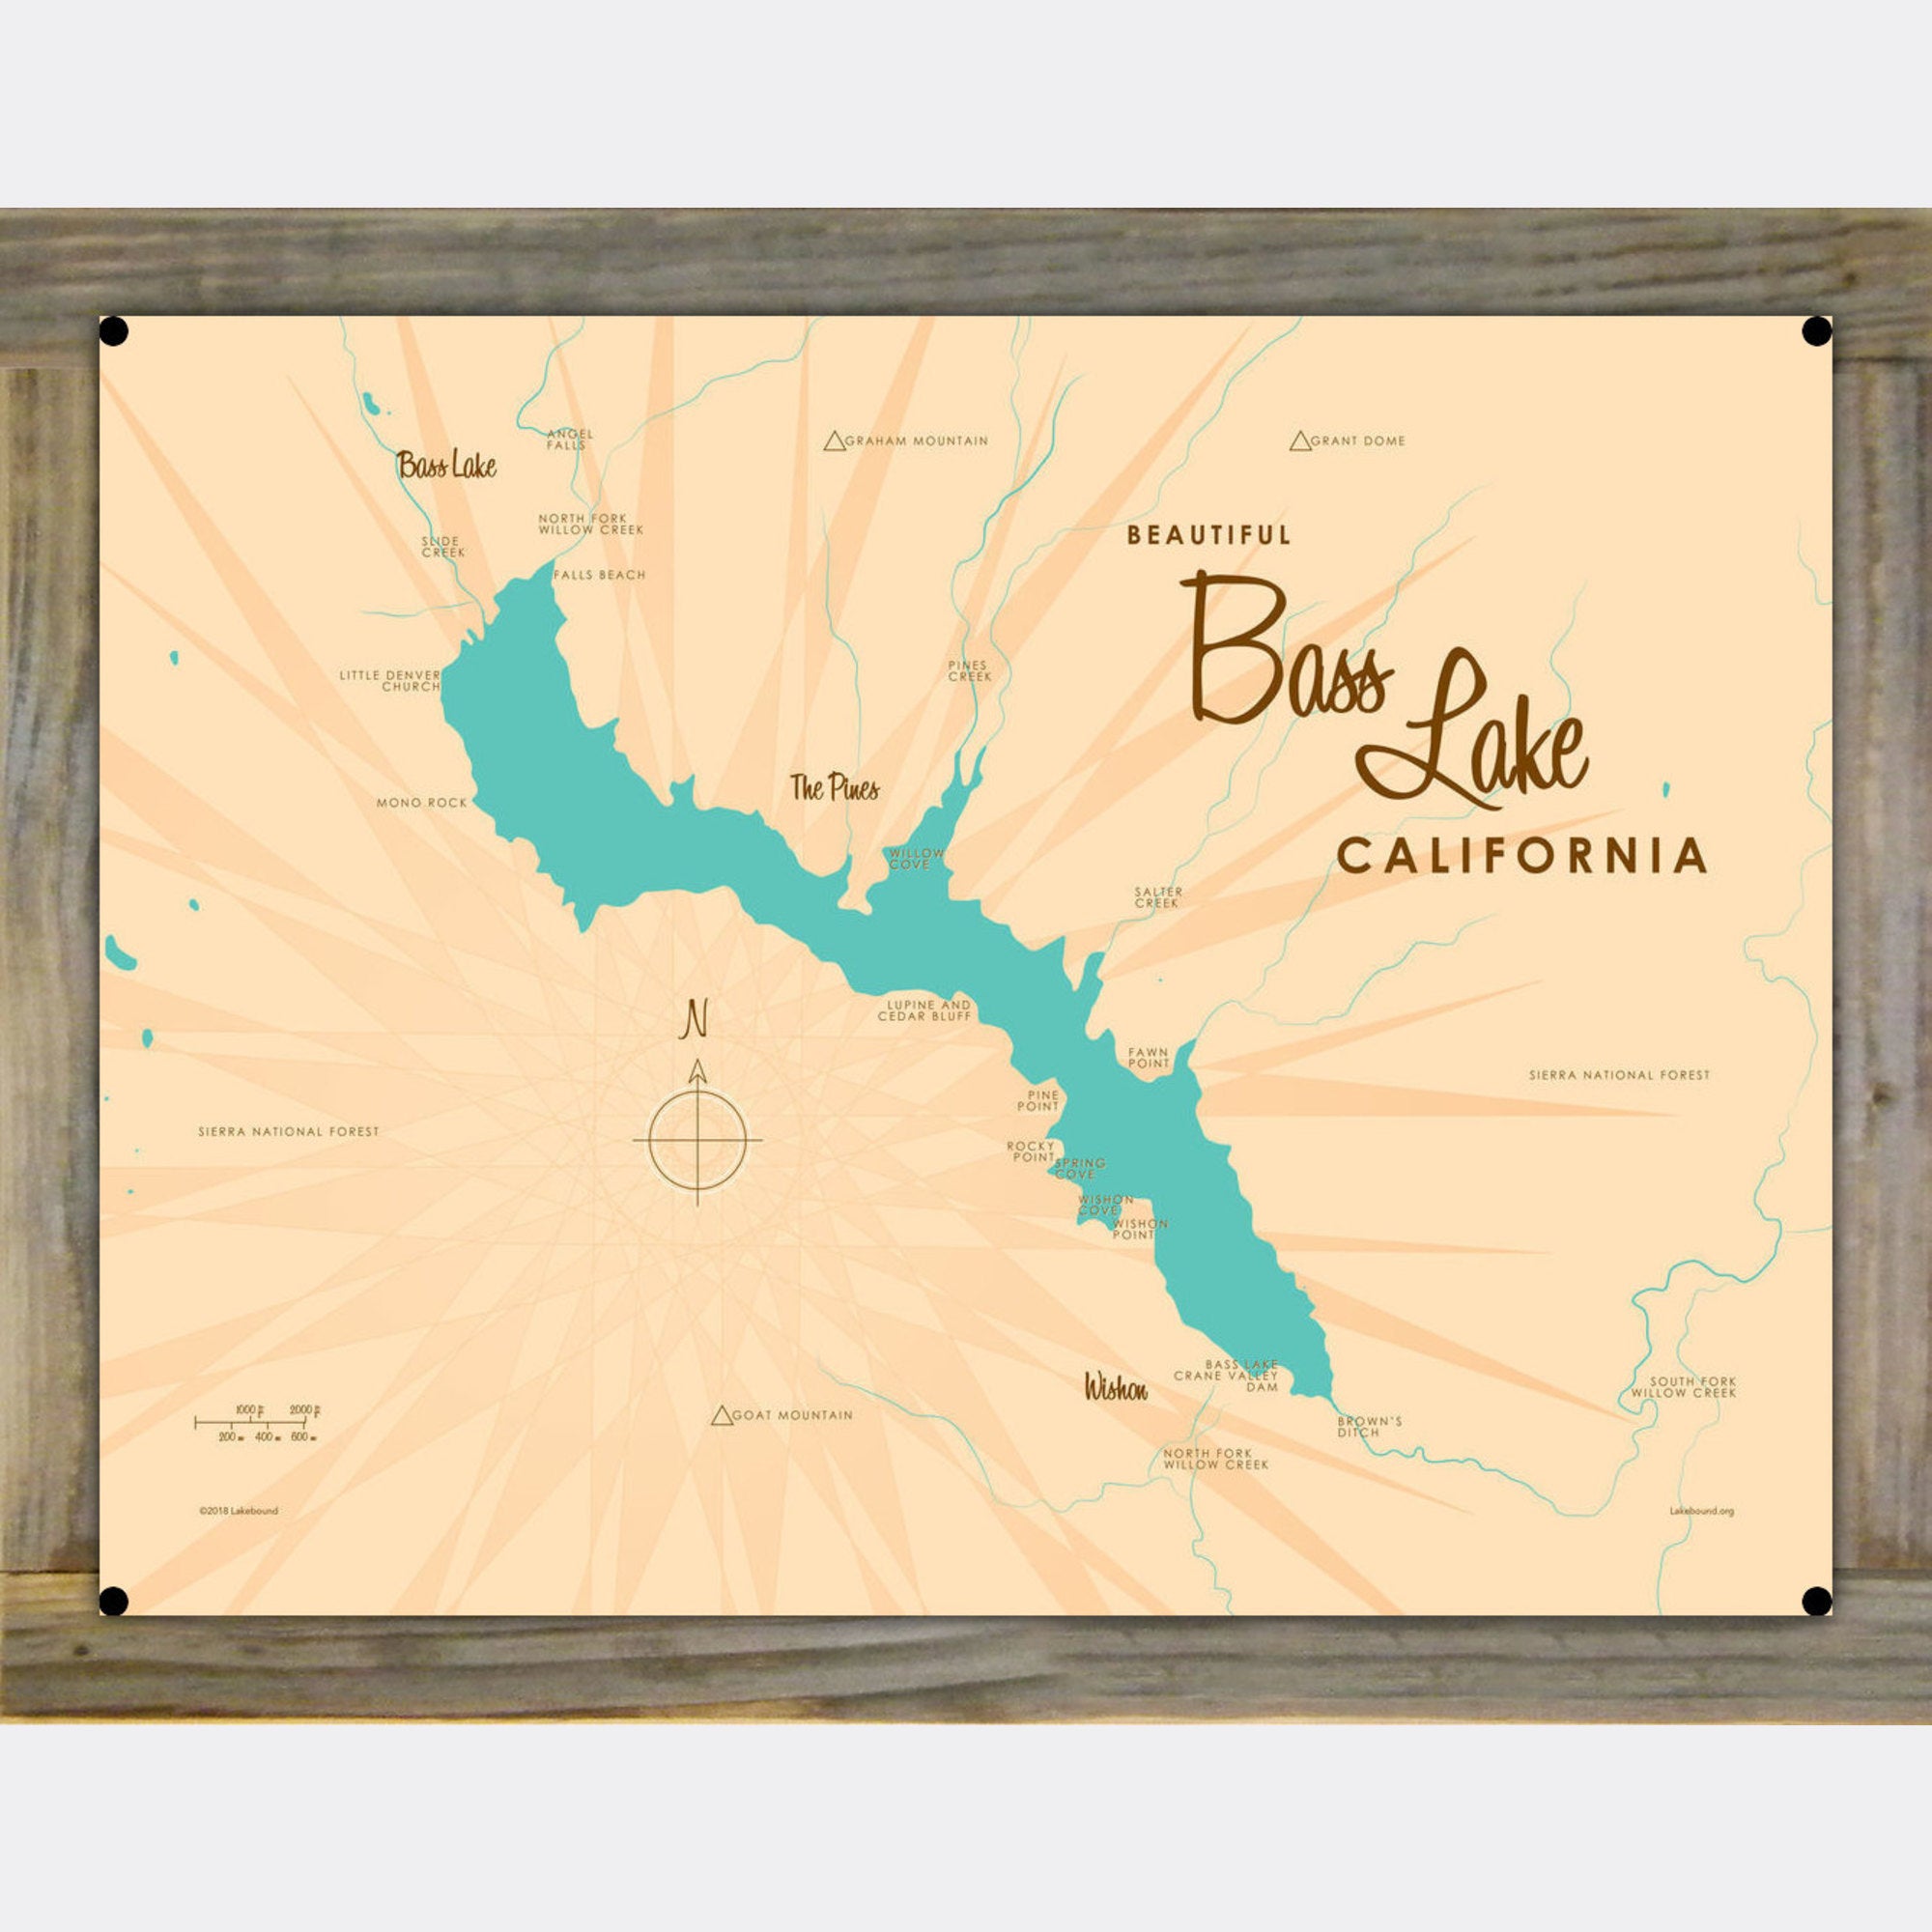 Bass Lake California, Wood-Mounted Metal Sign Map Art